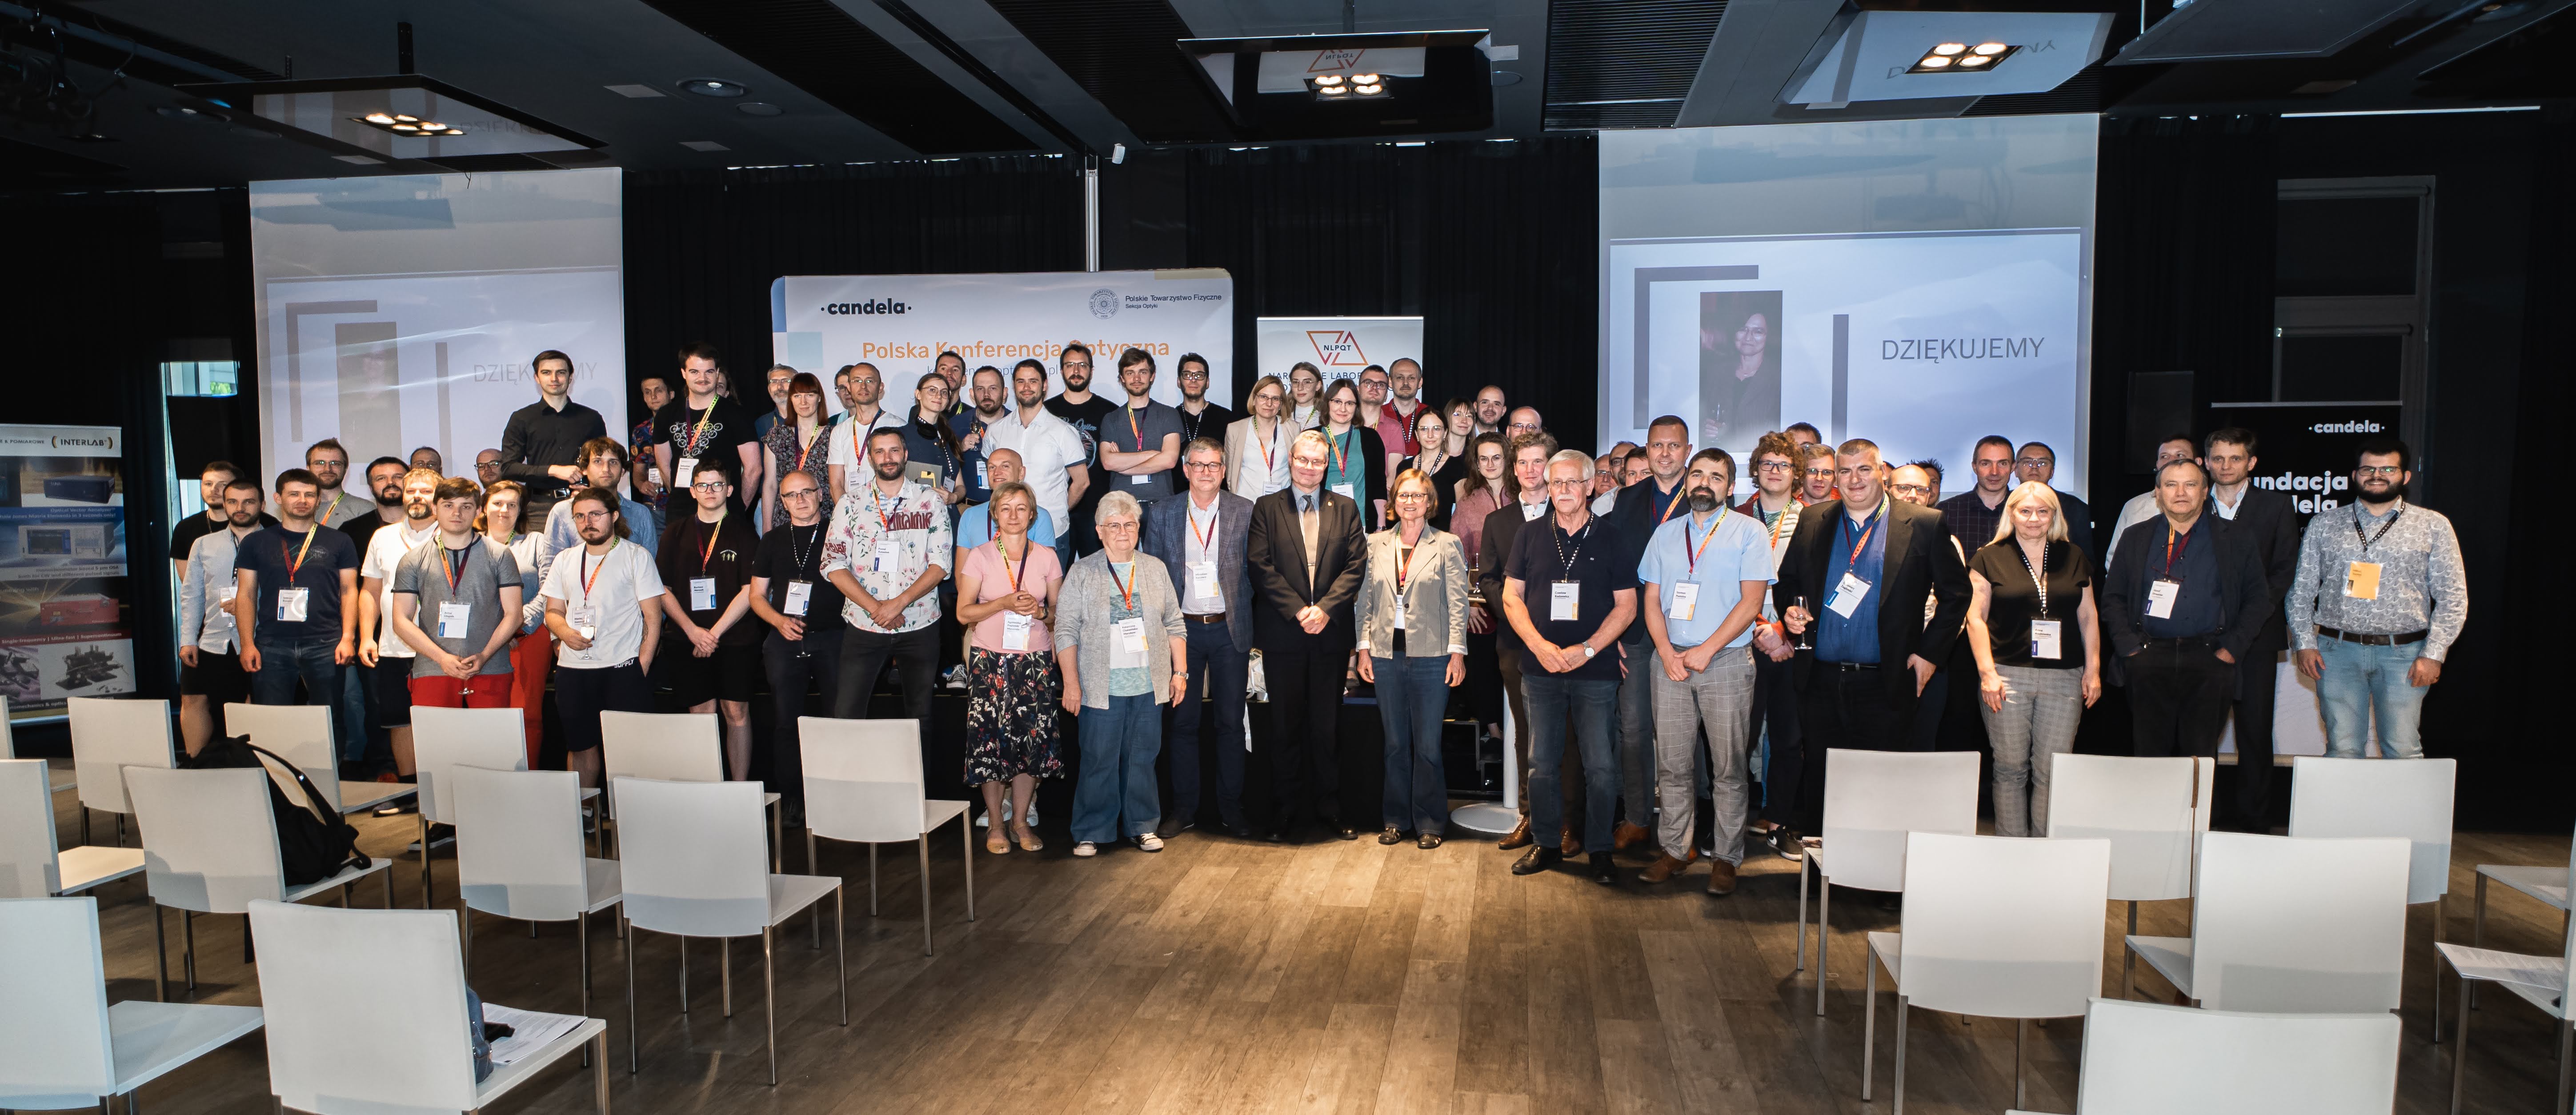 Uczestnicy Polskiej Konferencji Optycznej na scenie - zdjęcie grupowe